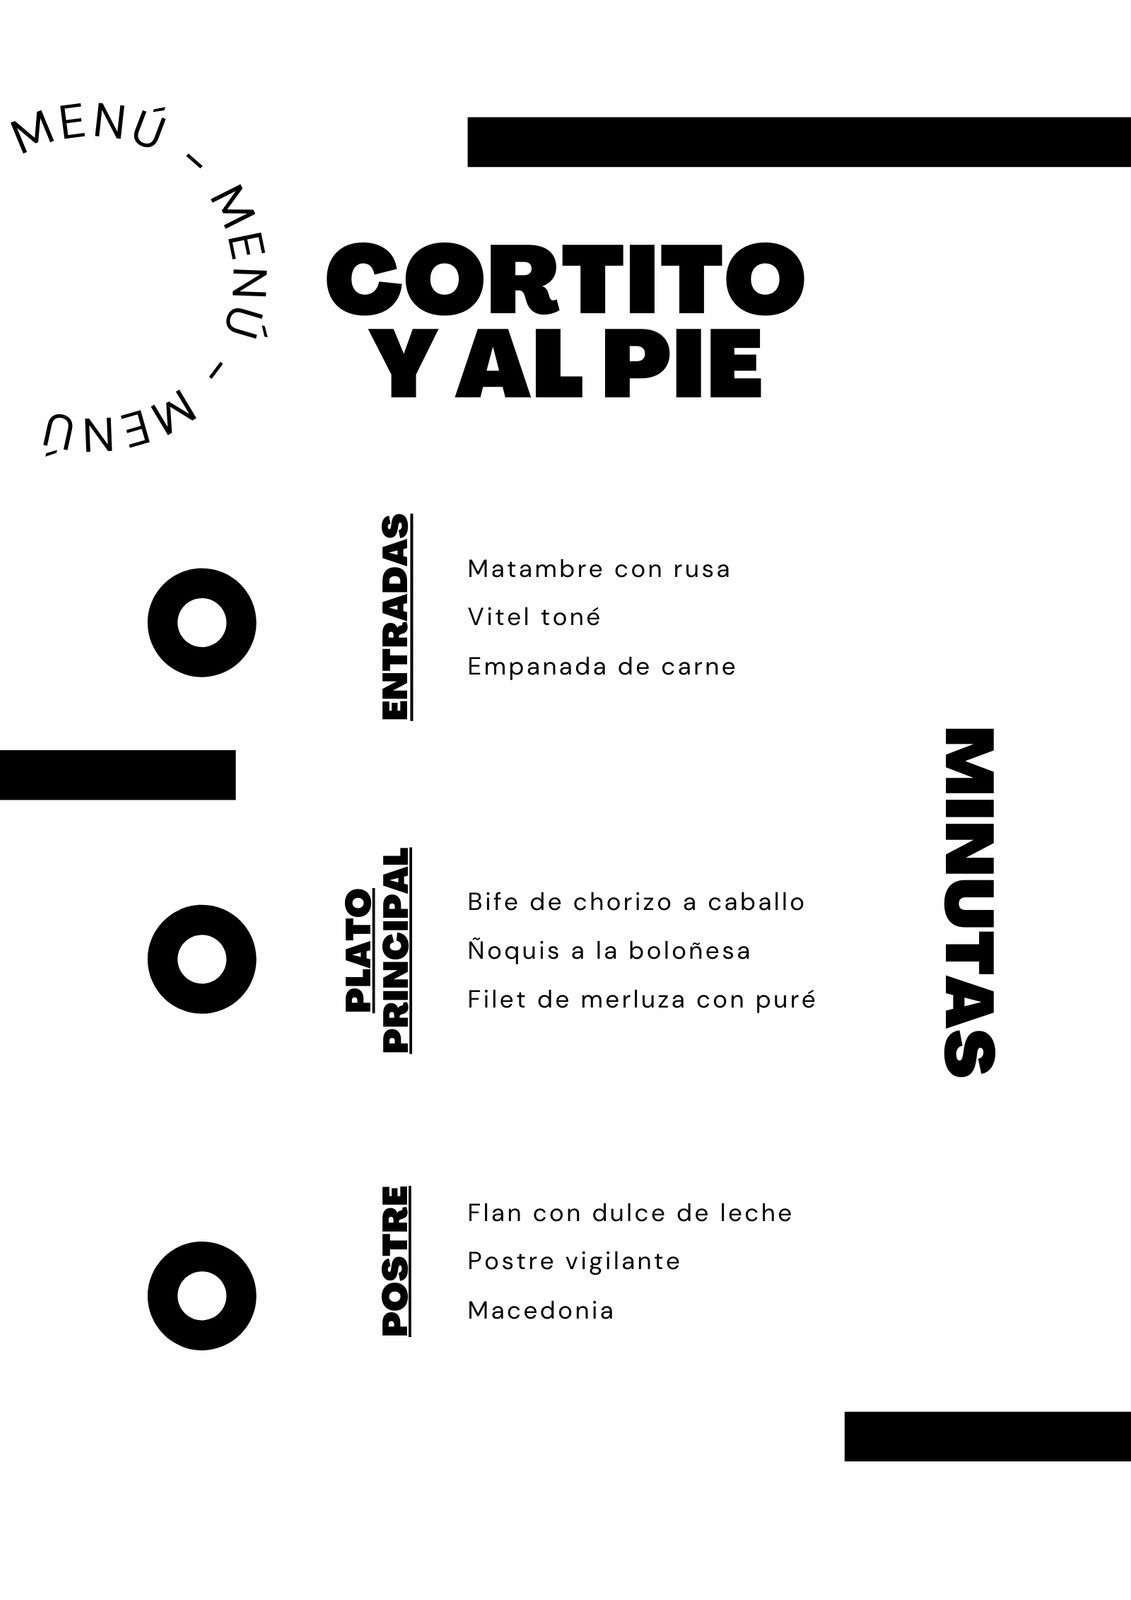 Flyer tipográfico de recetas clásicas, color blanco y negro con rectángulos y anillos